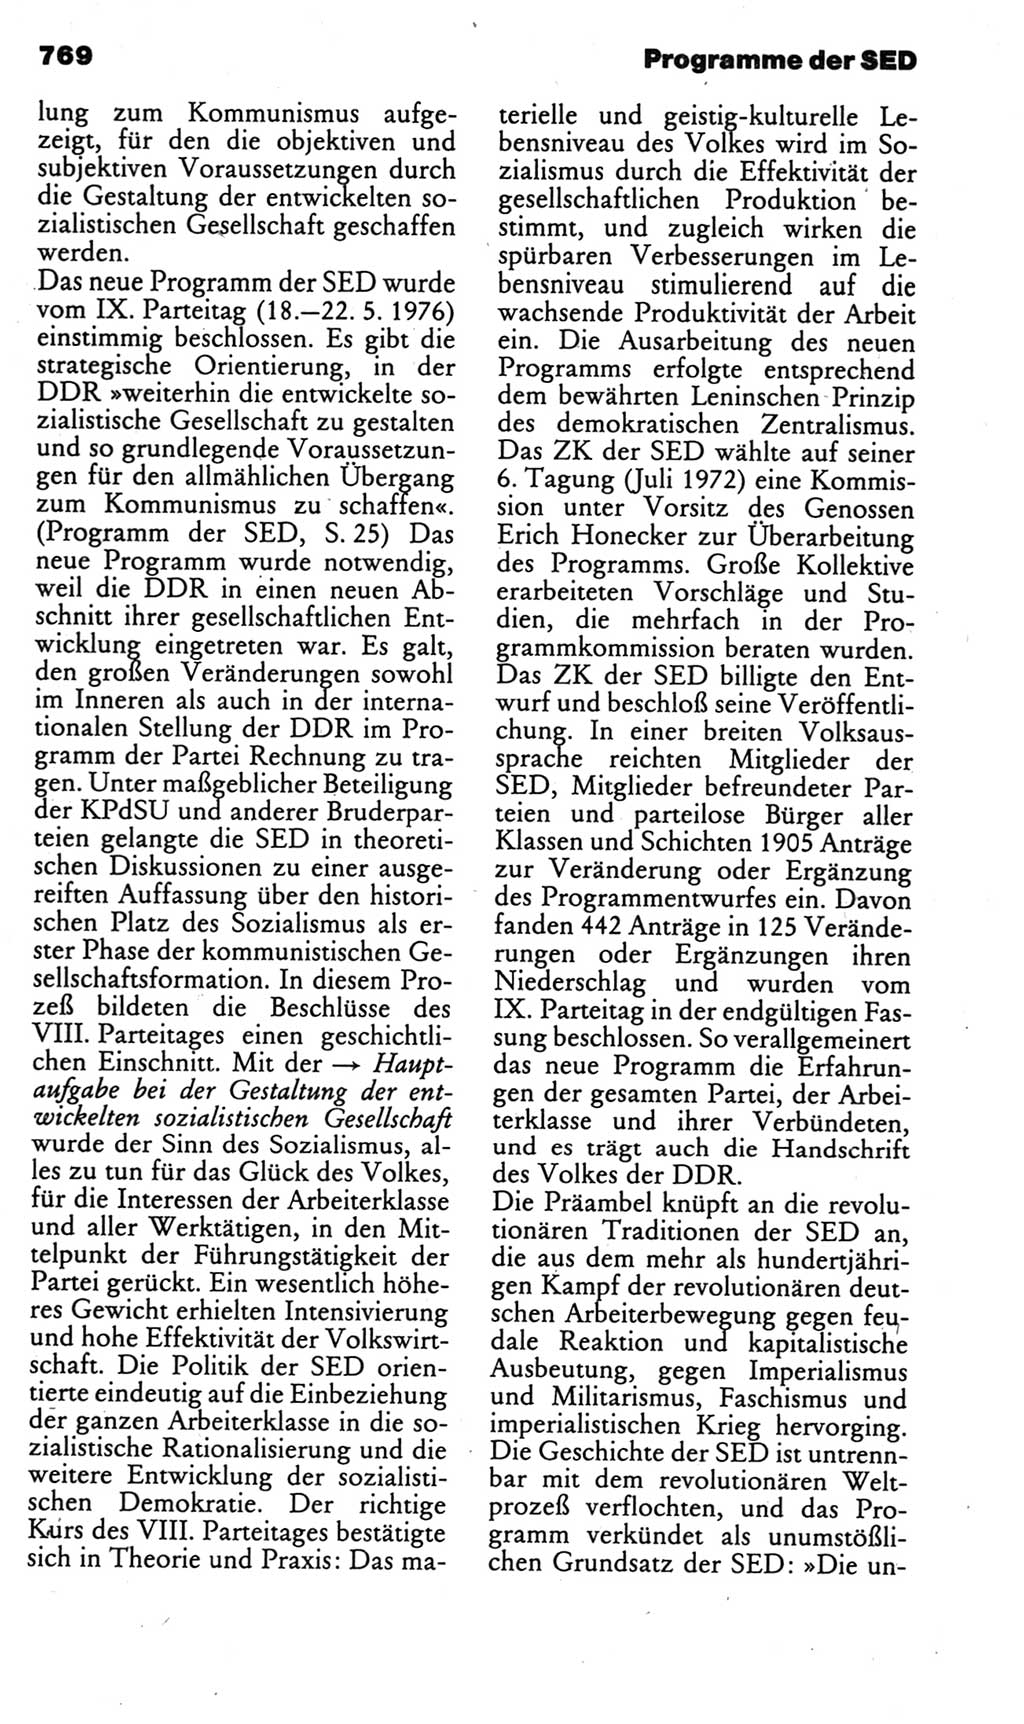 Kleines politisches Wörterbuch [Deutsche Demokratische Republik (DDR)] 1985, Seite 769 (Kl. pol. Wb. DDR 1985, S. 769)